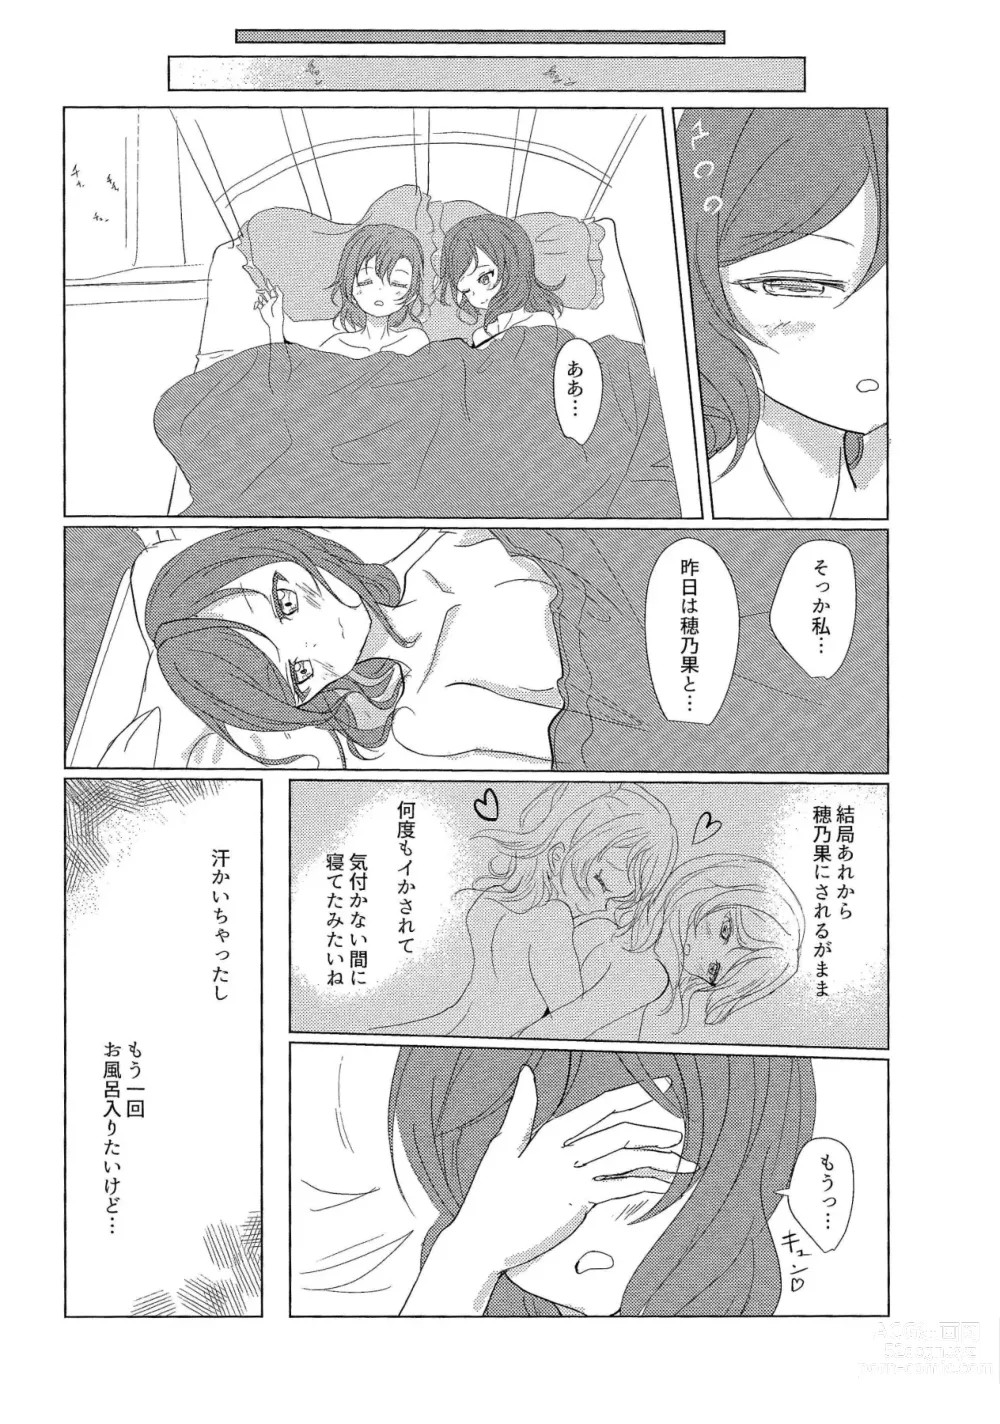 Page 31 of doujinshi ”I” o Kanadete Sono Yubi de